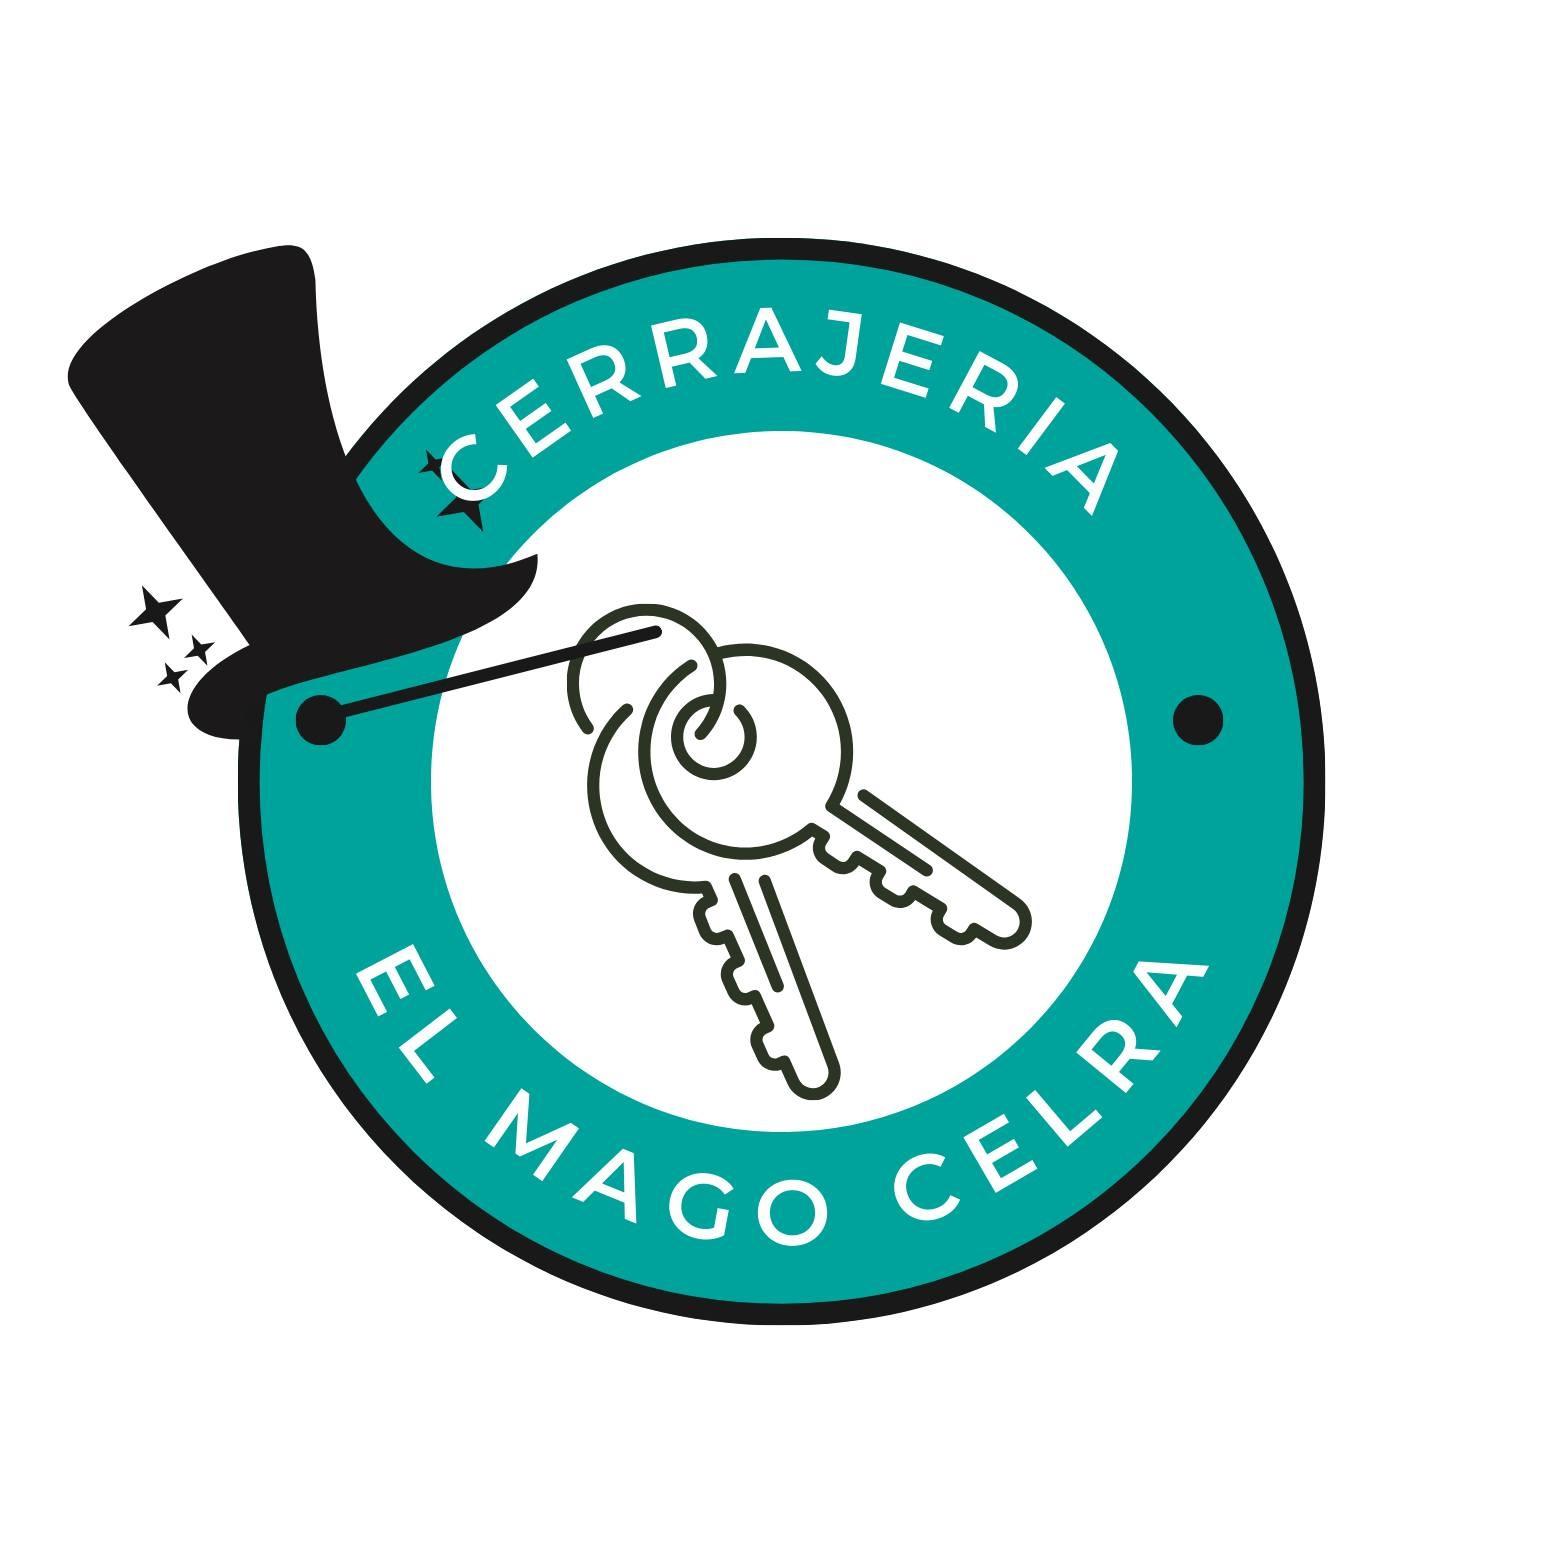 El Mago Celra Logo